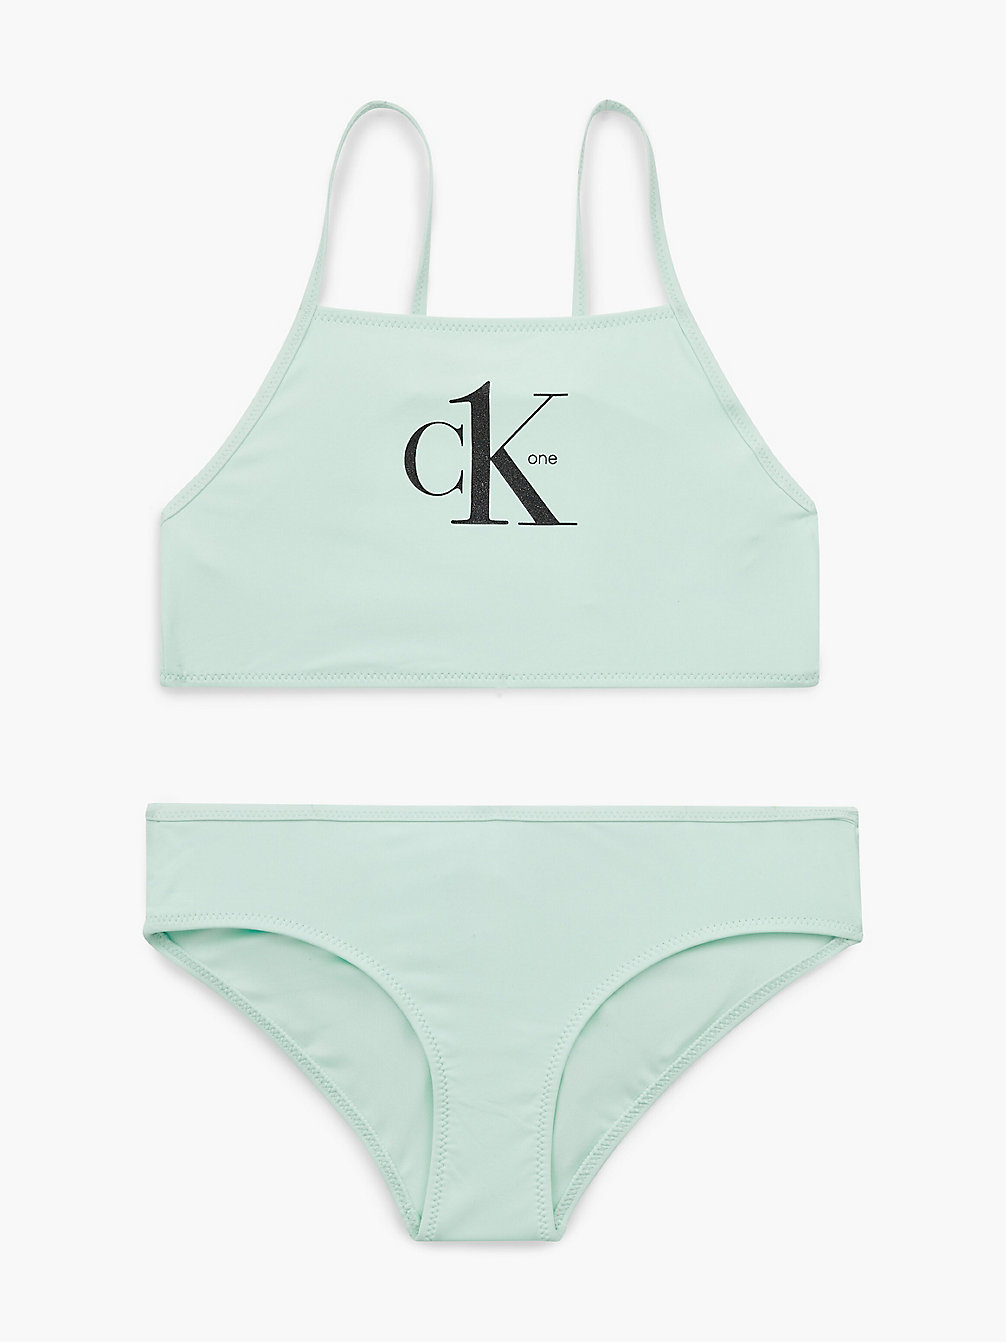 CLEAR SEAFOAM Girls Bralette Bikini Set - Y2ck One undefined girls Calvin Klein